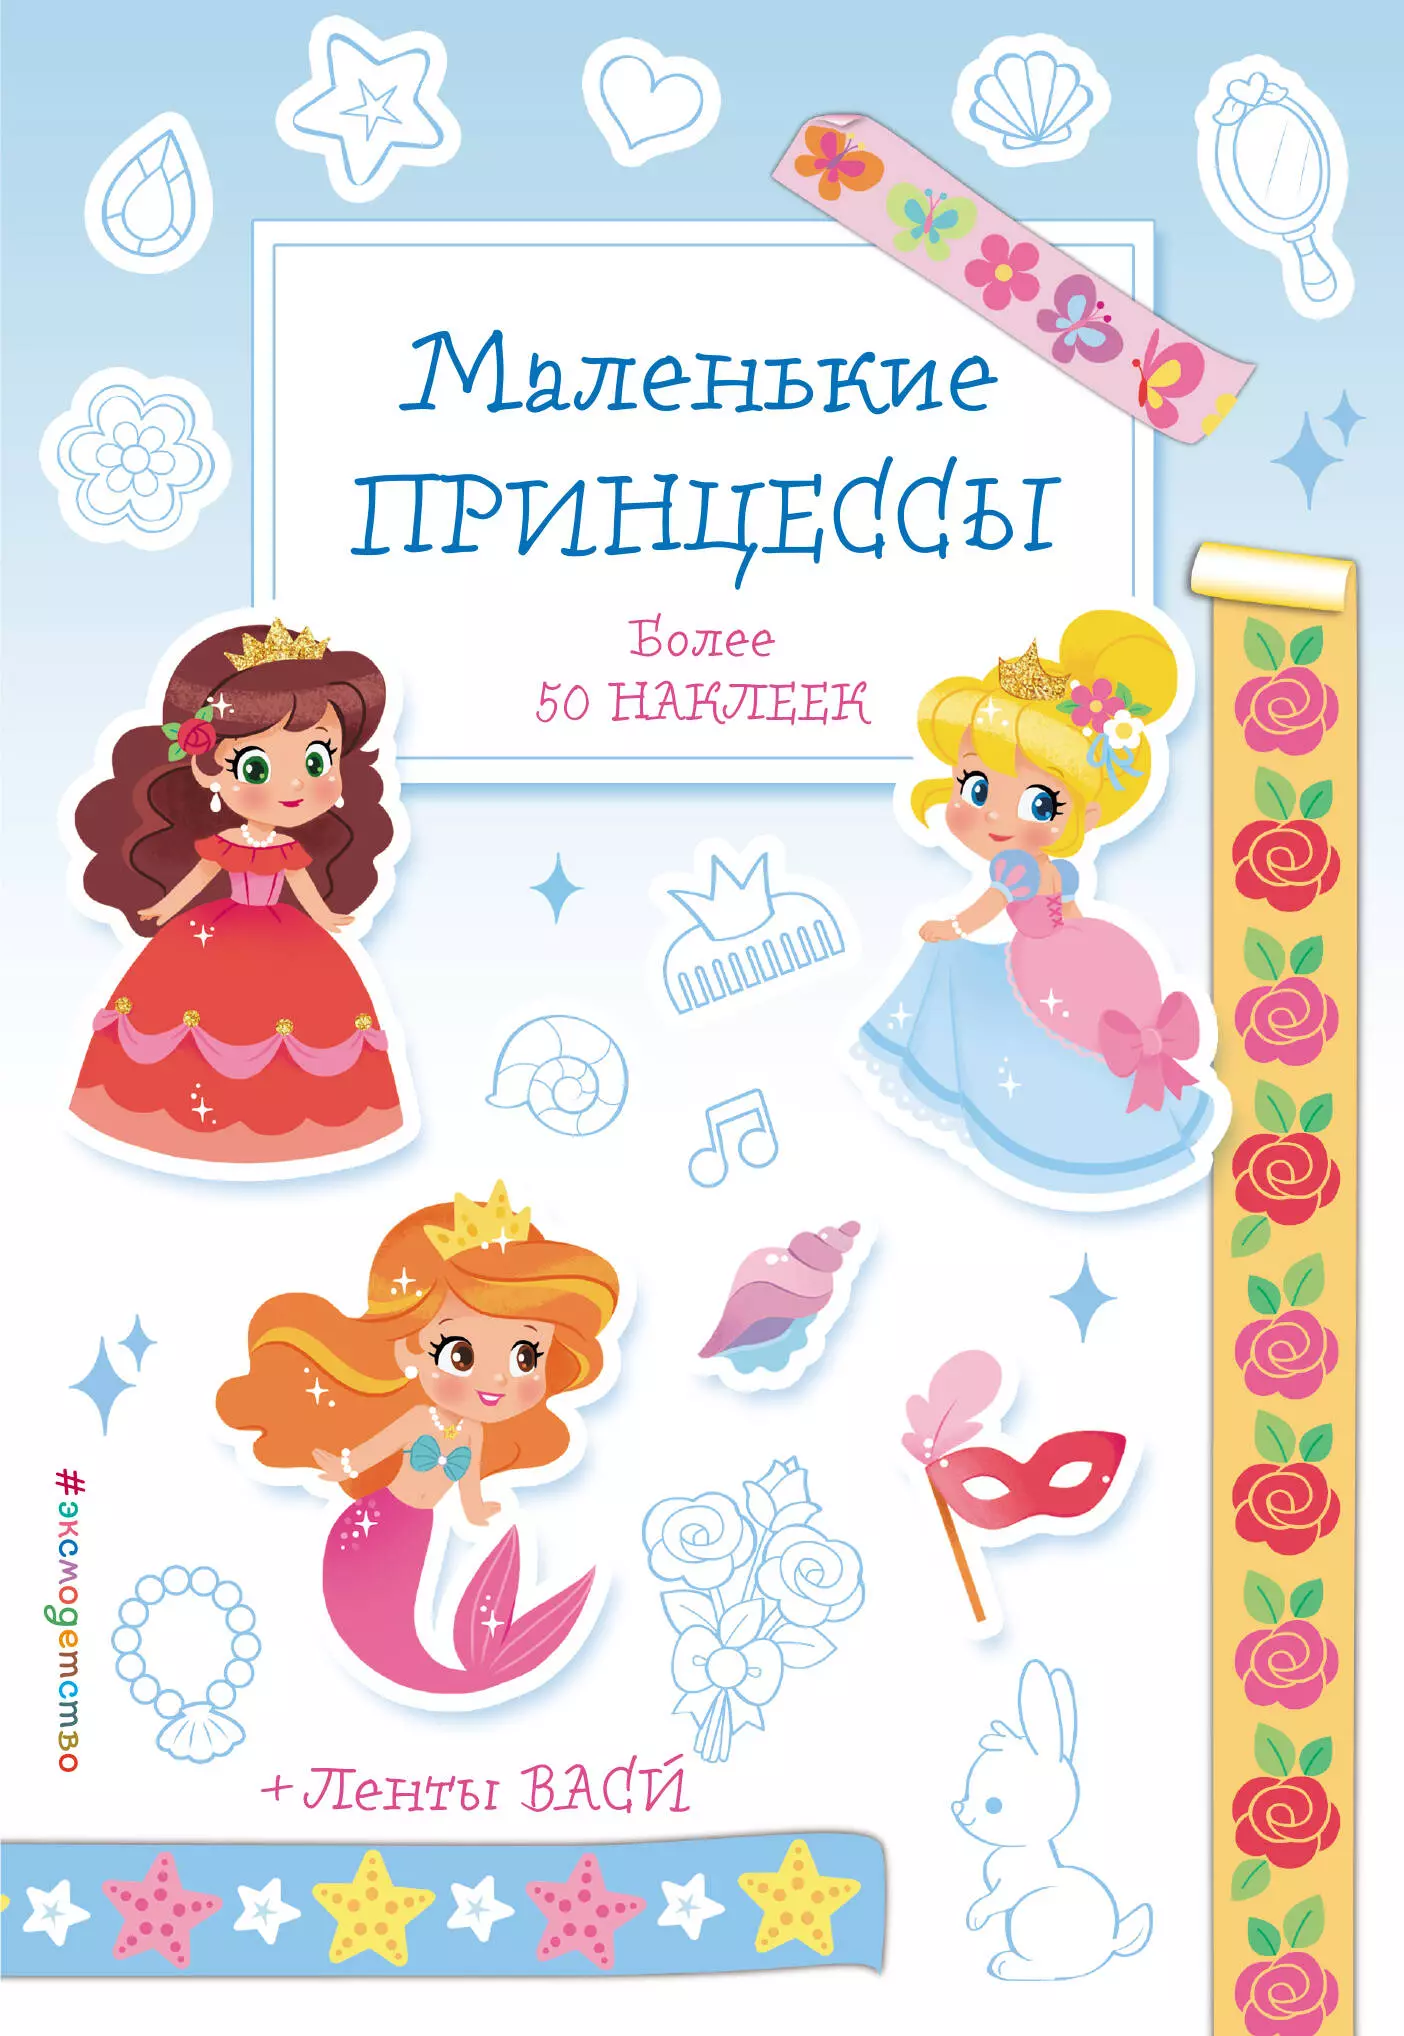 Позина Ирина Владимировна - Маленькие принцессы